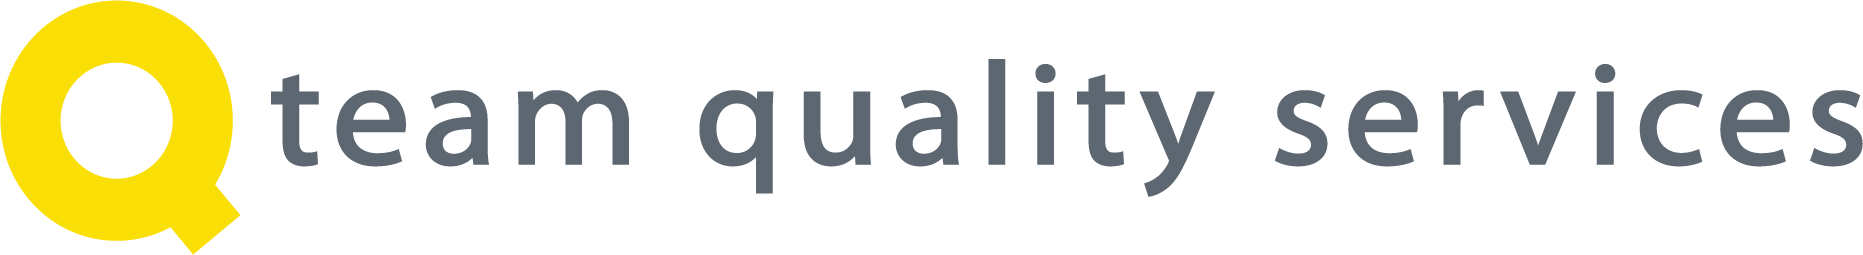 team quality services logo